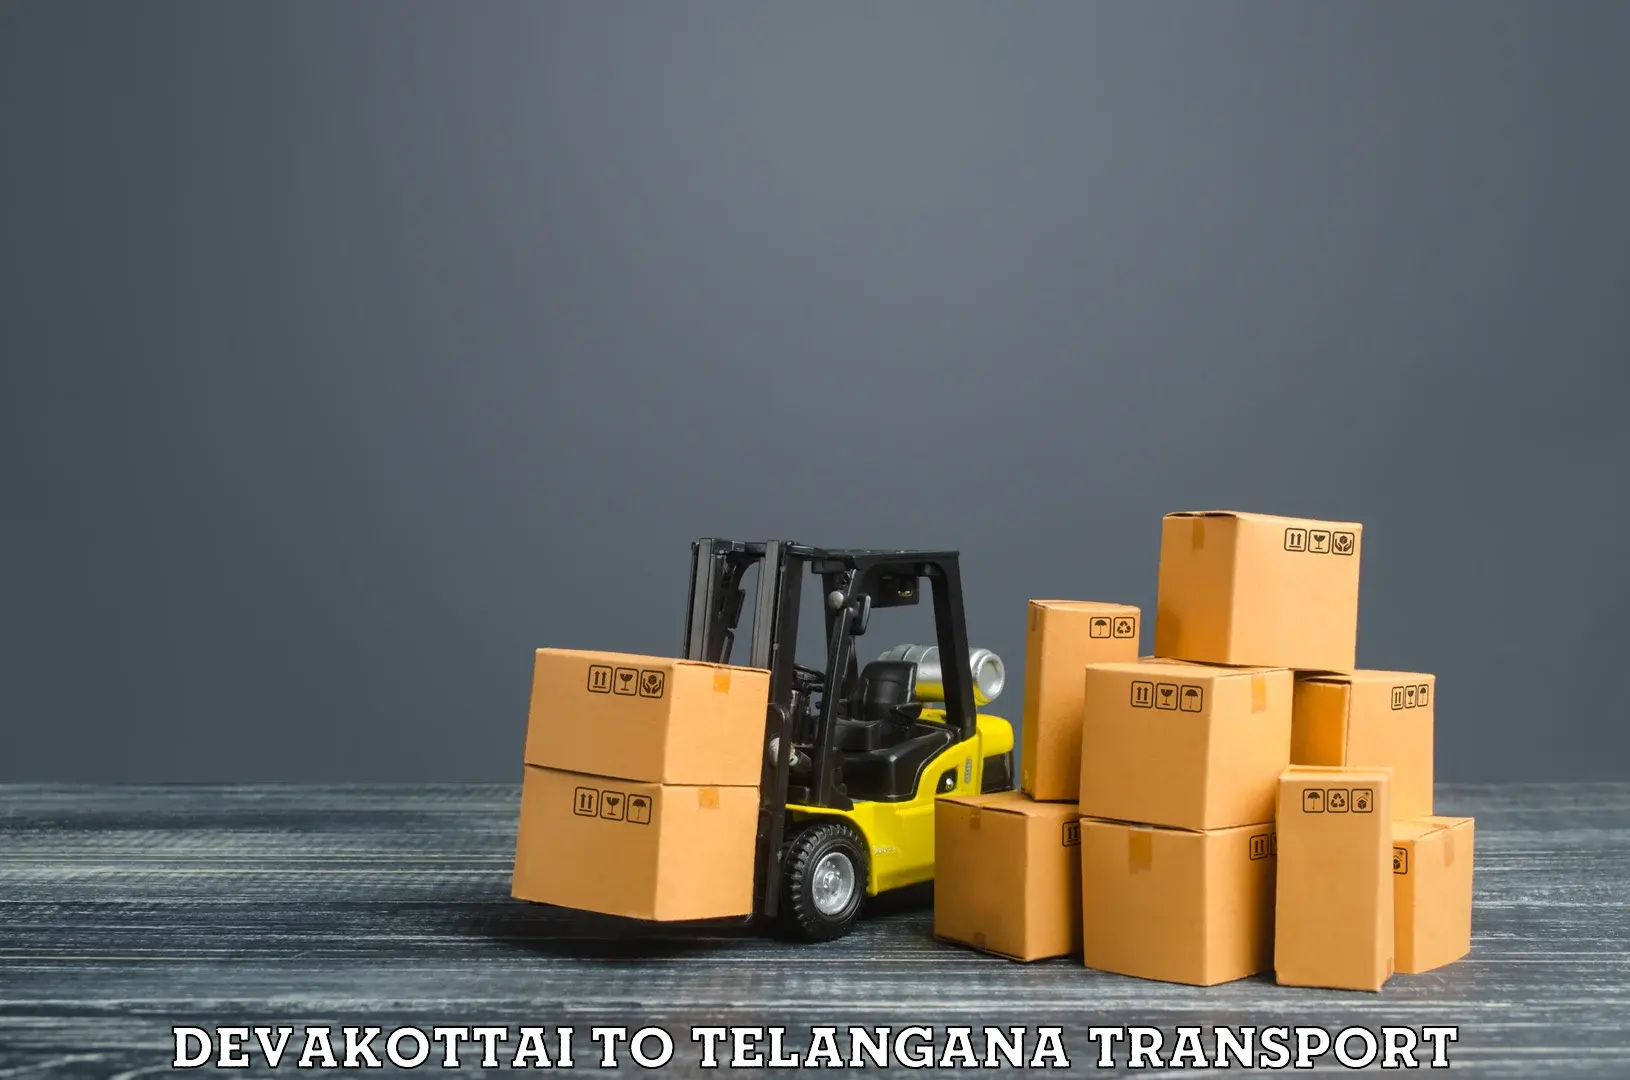 Road transport online services Devakottai to Chegunta